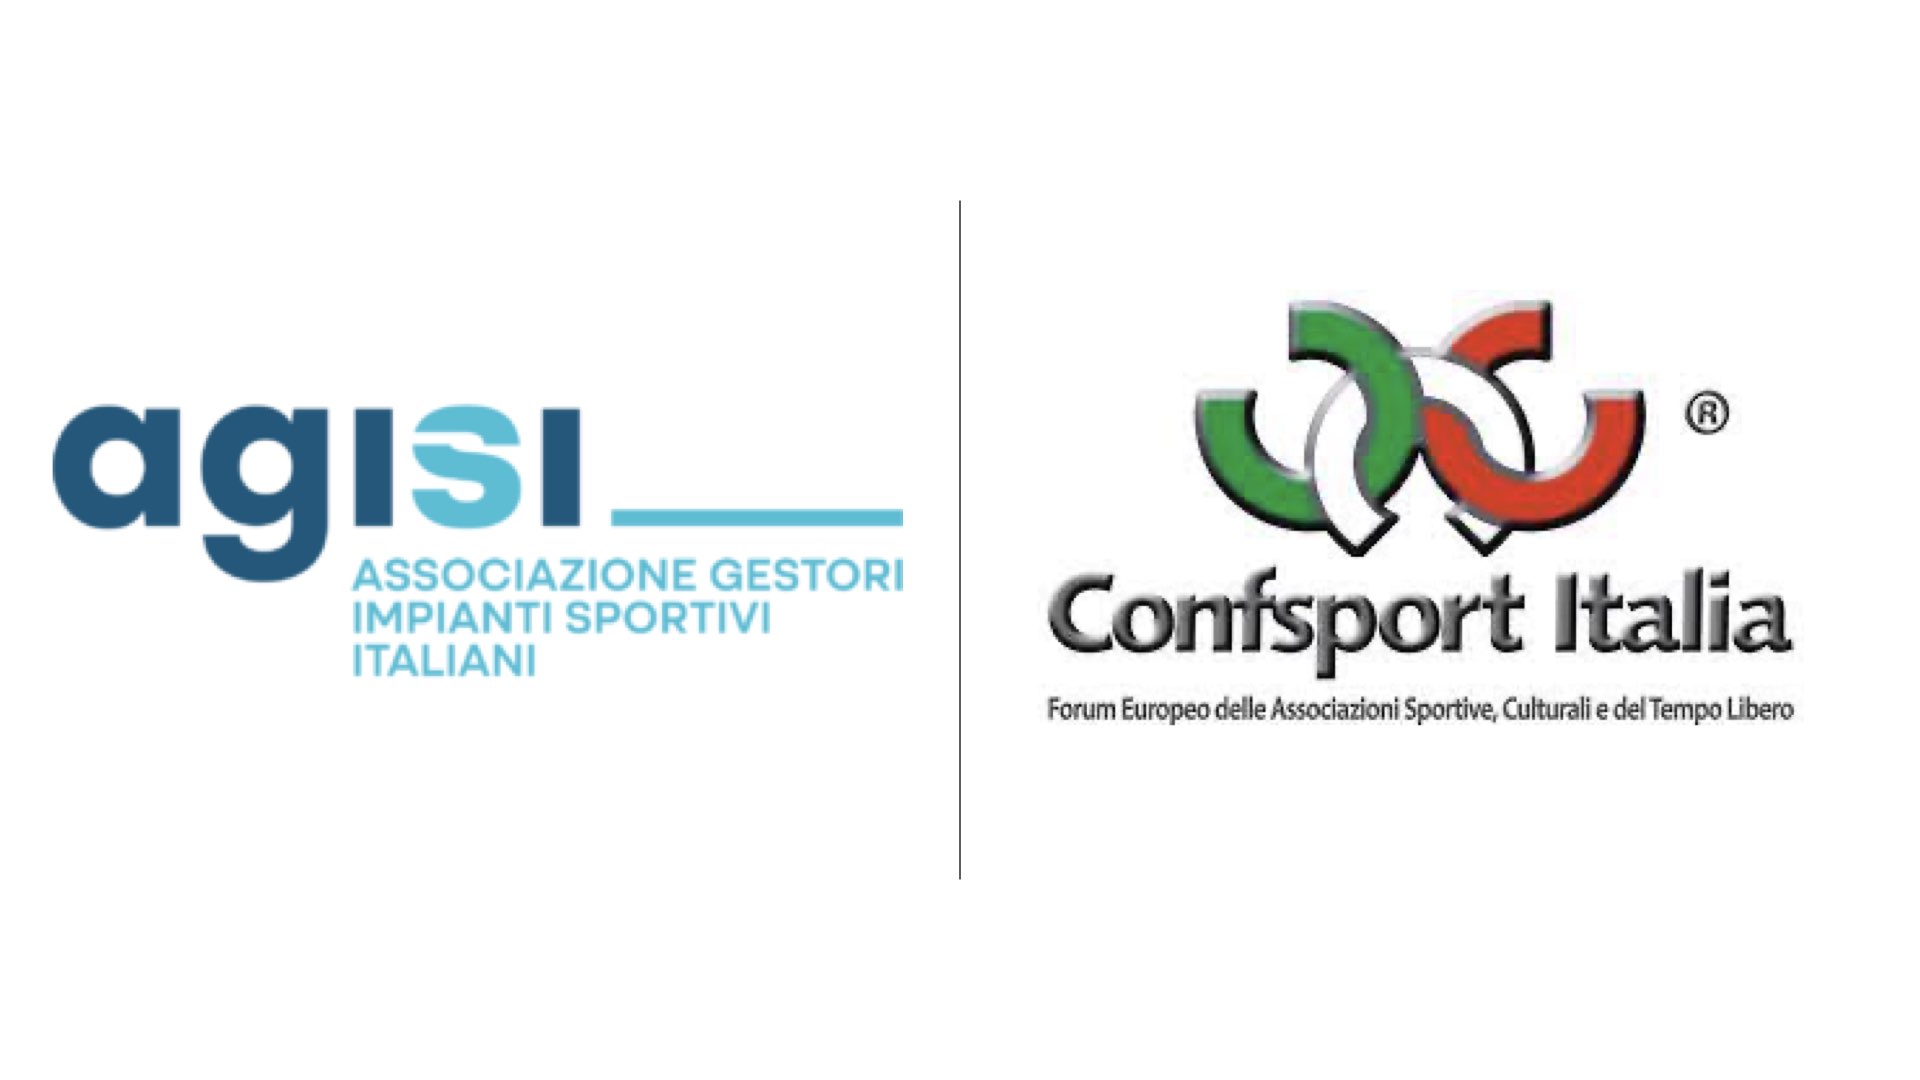 AGISI e Confsport Italia APSSD, un nuovo accordo di collaborazione